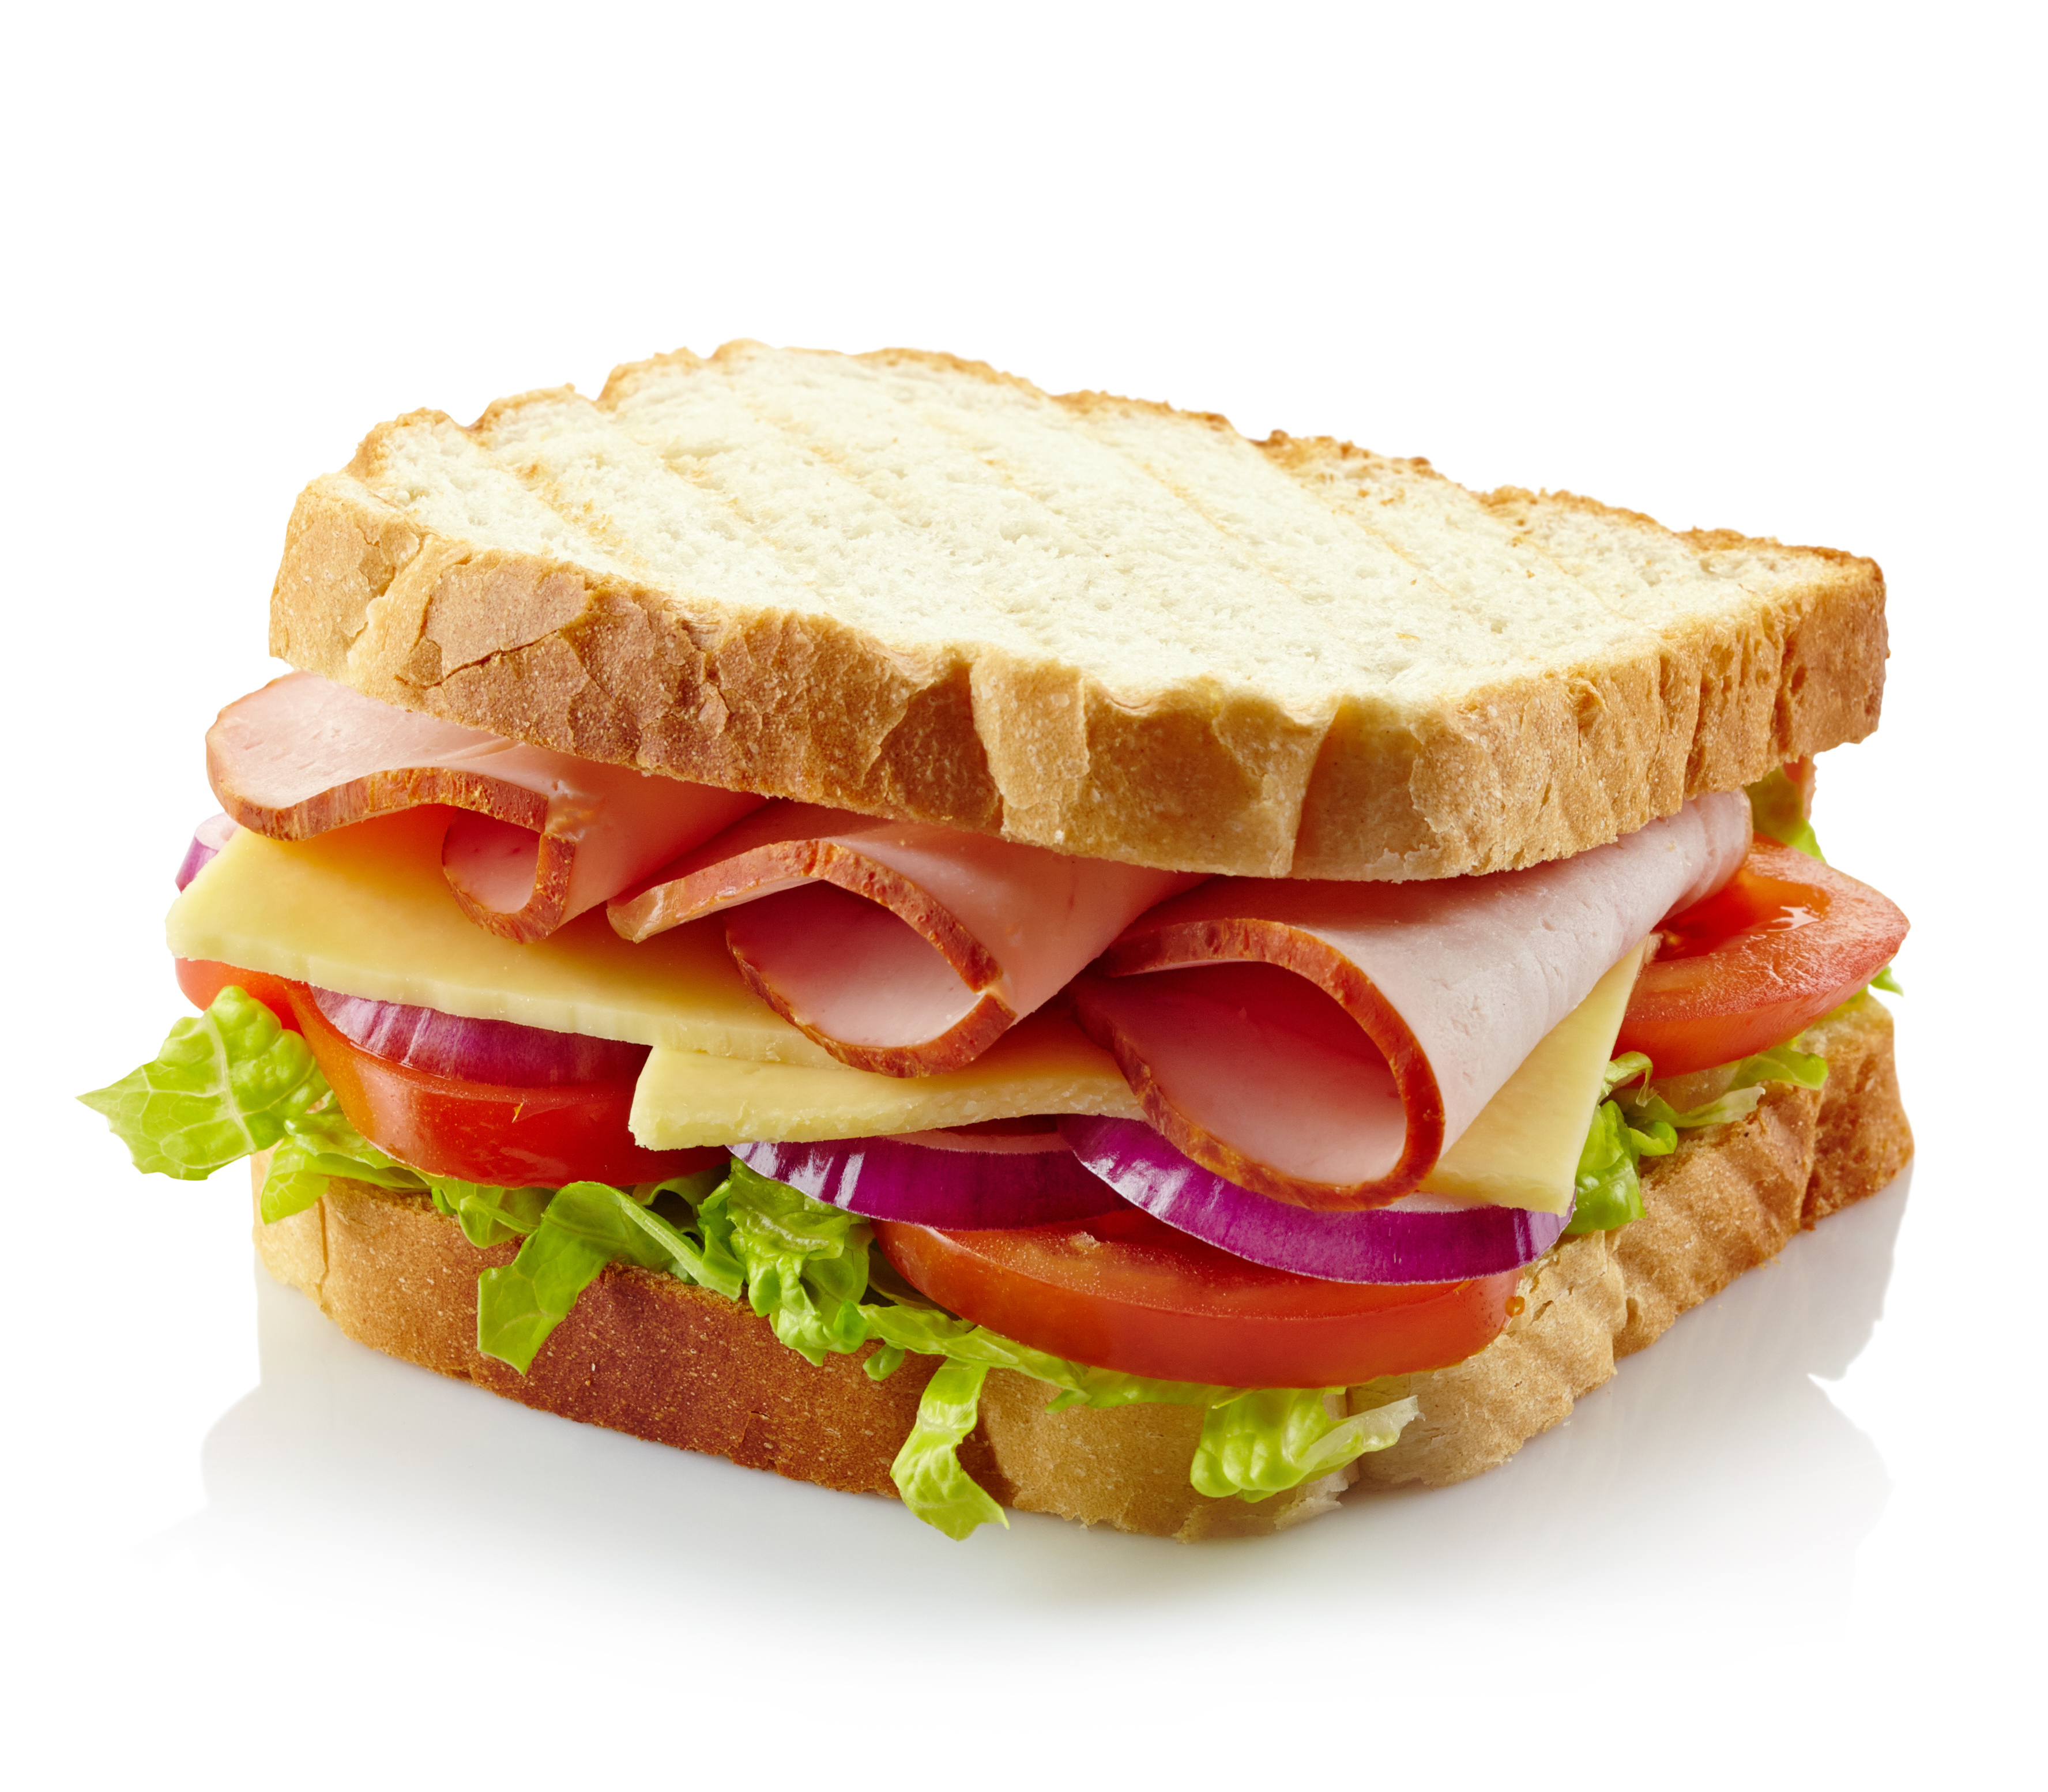 Victoria Centre – Great Ham Sandwiches today